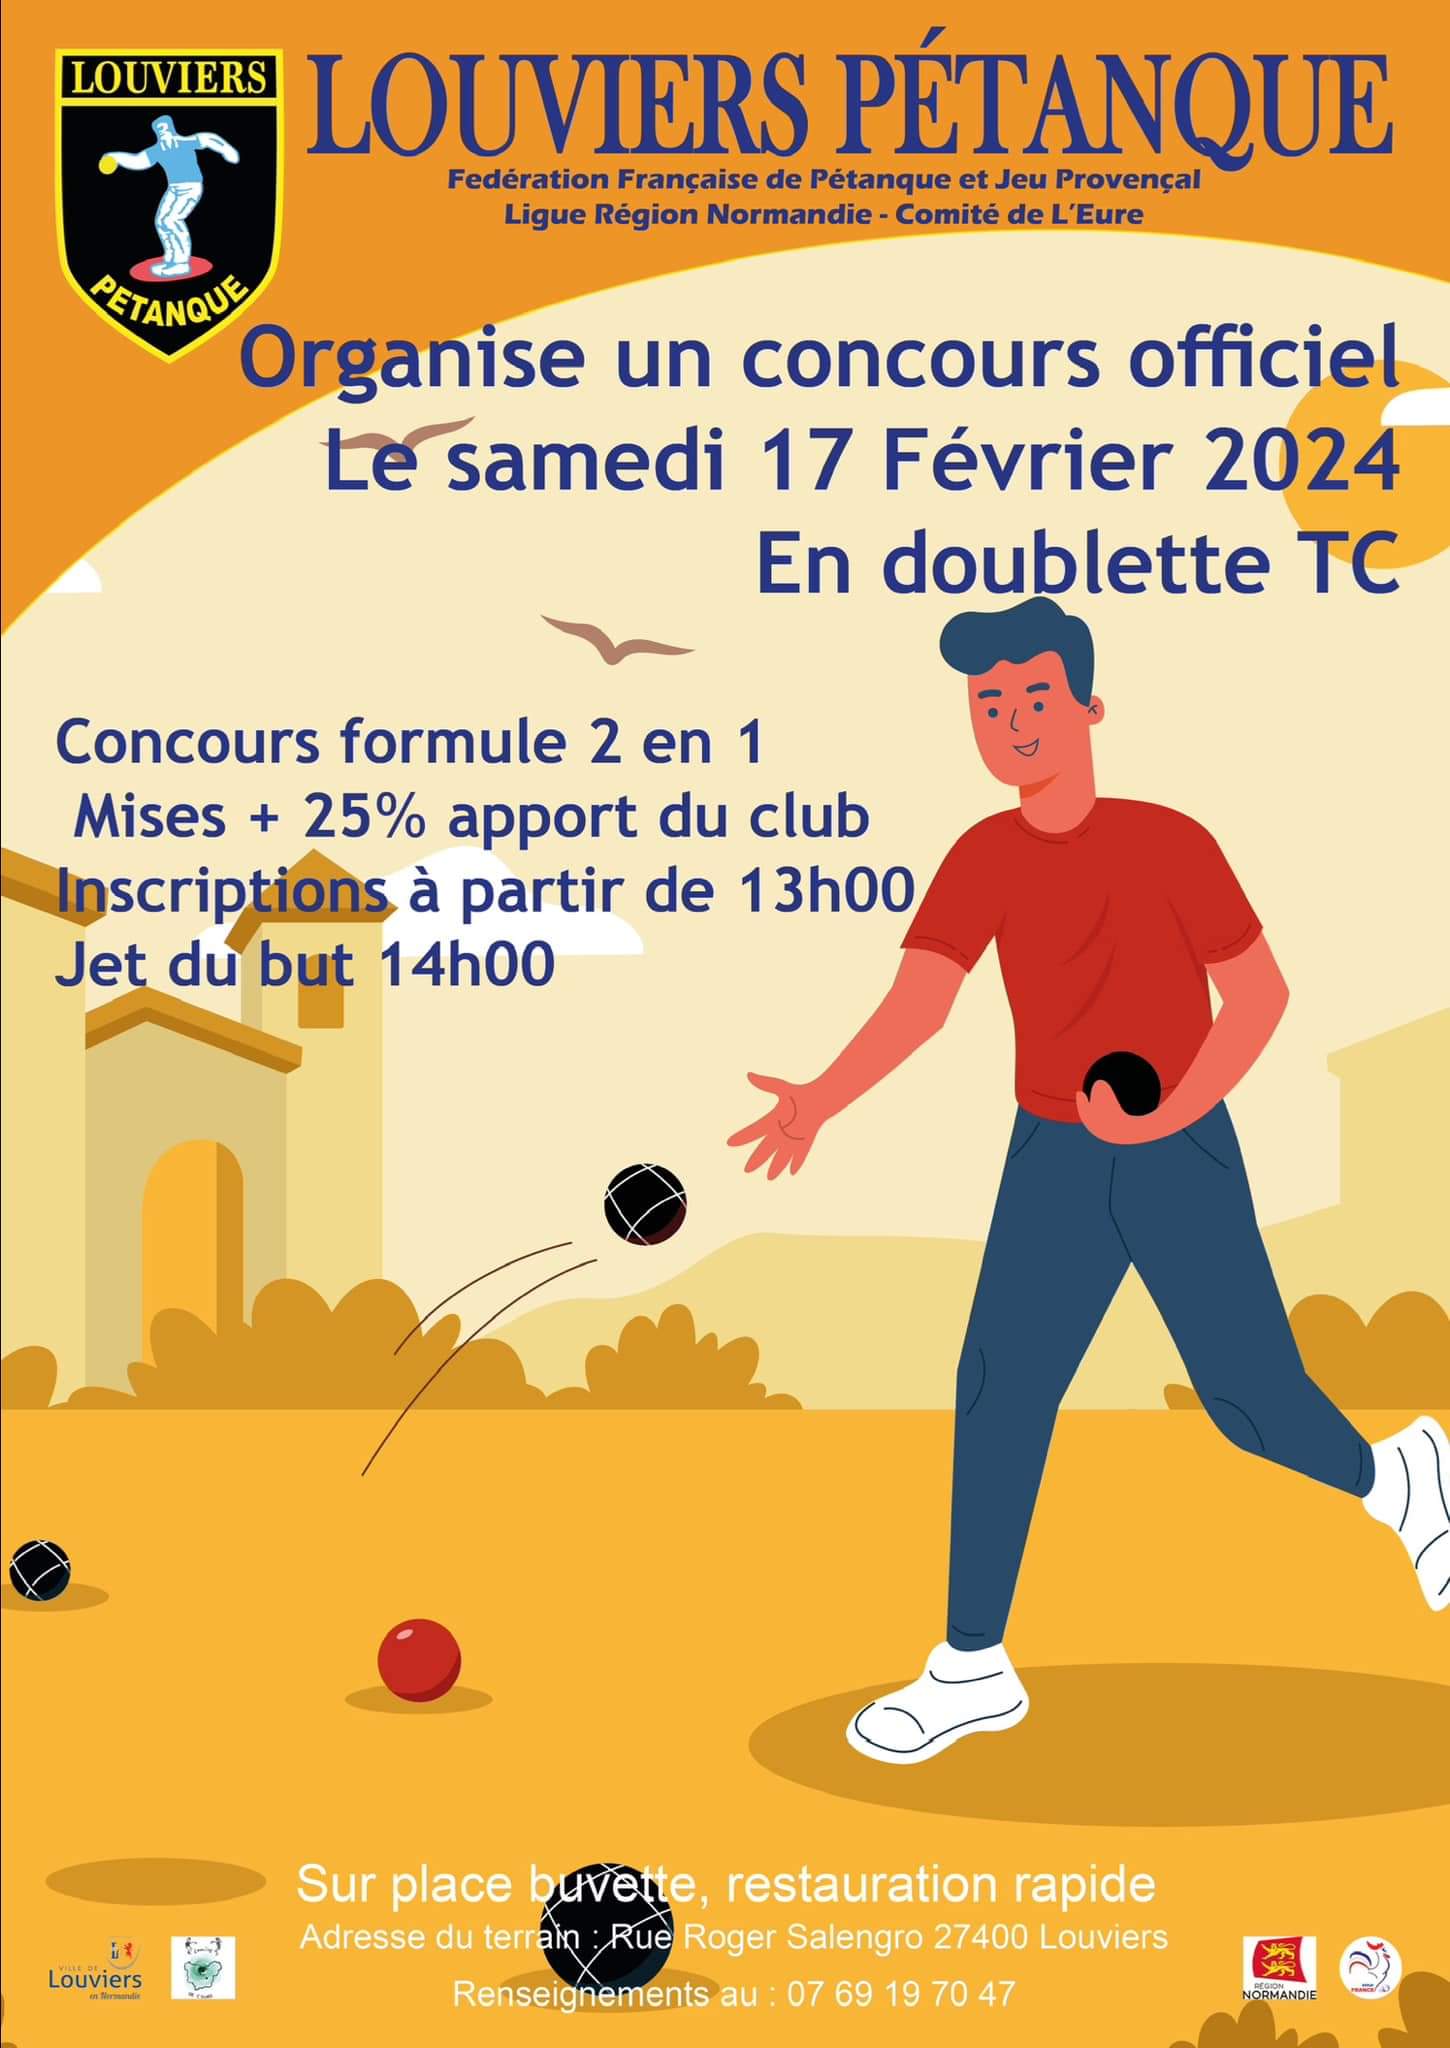 Concours Doublette Tc Louviers 17 février